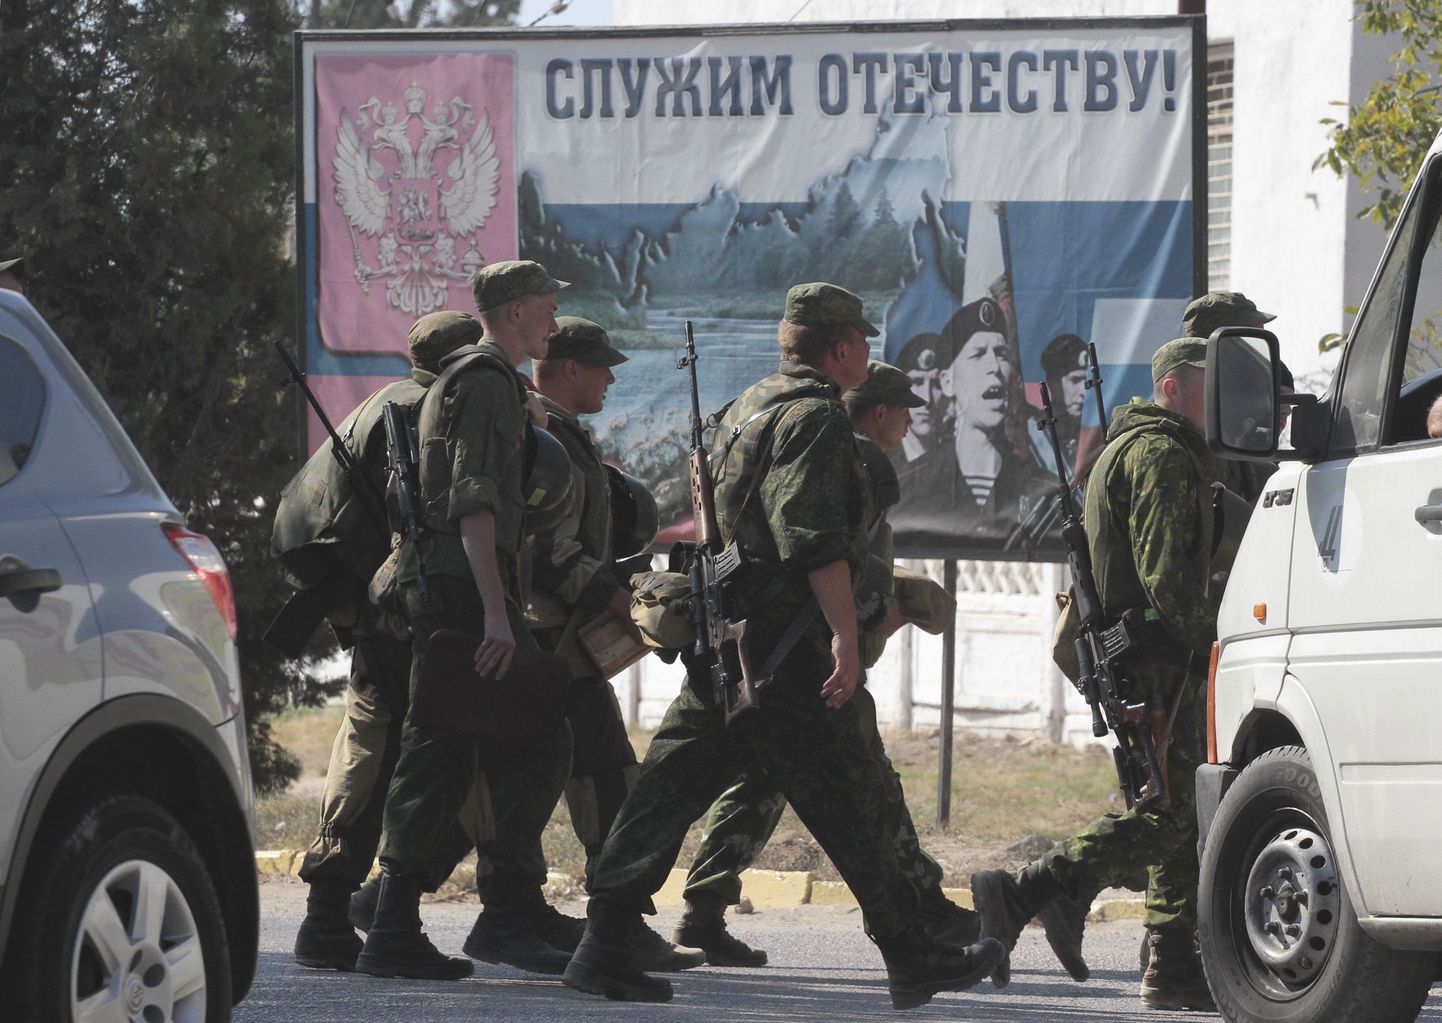 Vene mereväelased Sevastopolis. Taustal olev plakat räägib kodumaa teenimisest.